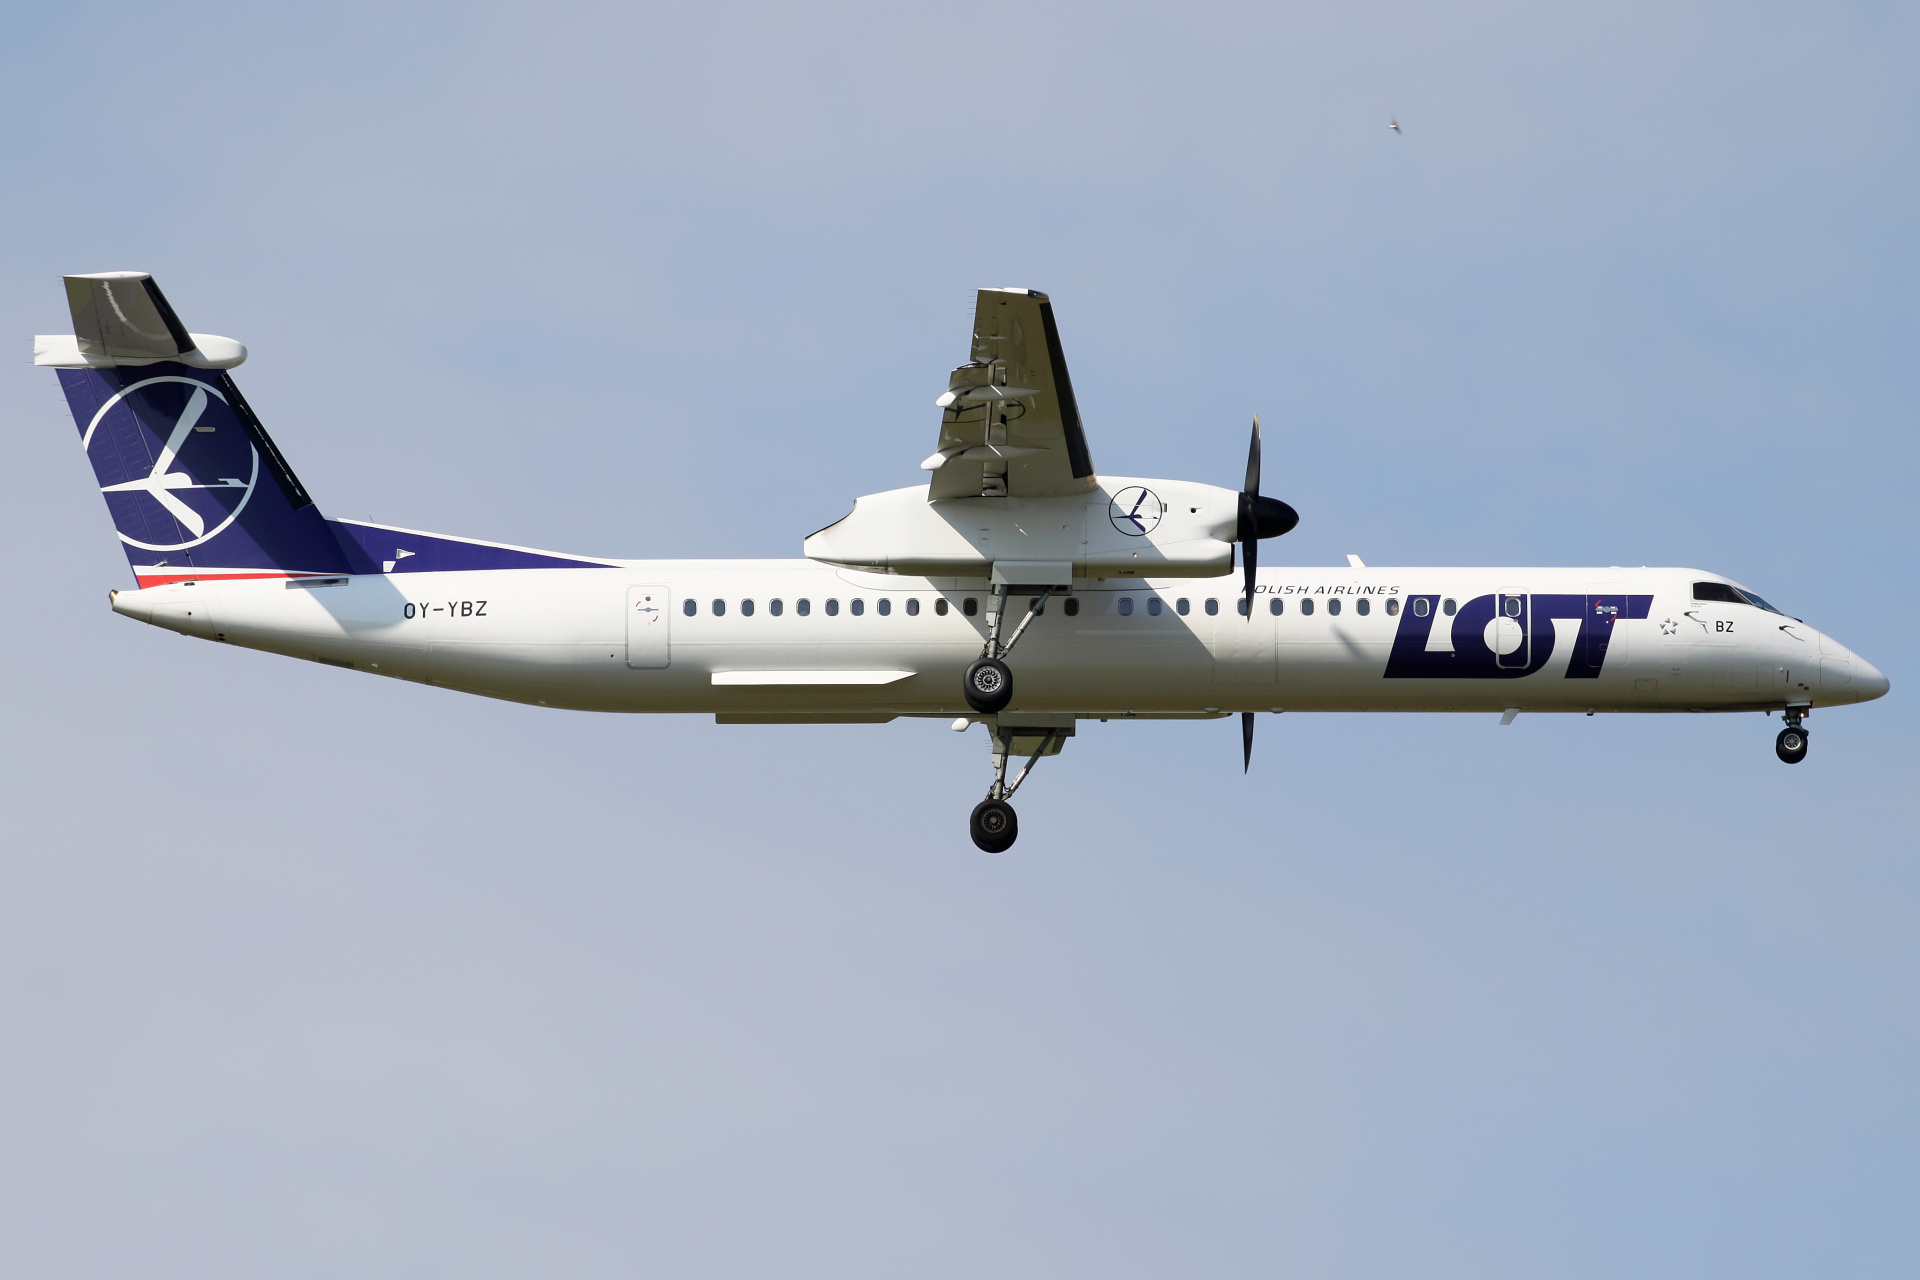 OY-YBZ (Samoloty » Spotting na EPWA » De Havilland Canada DHC-8 Dash 8 » Polskie Linie Lotnicze LOT)